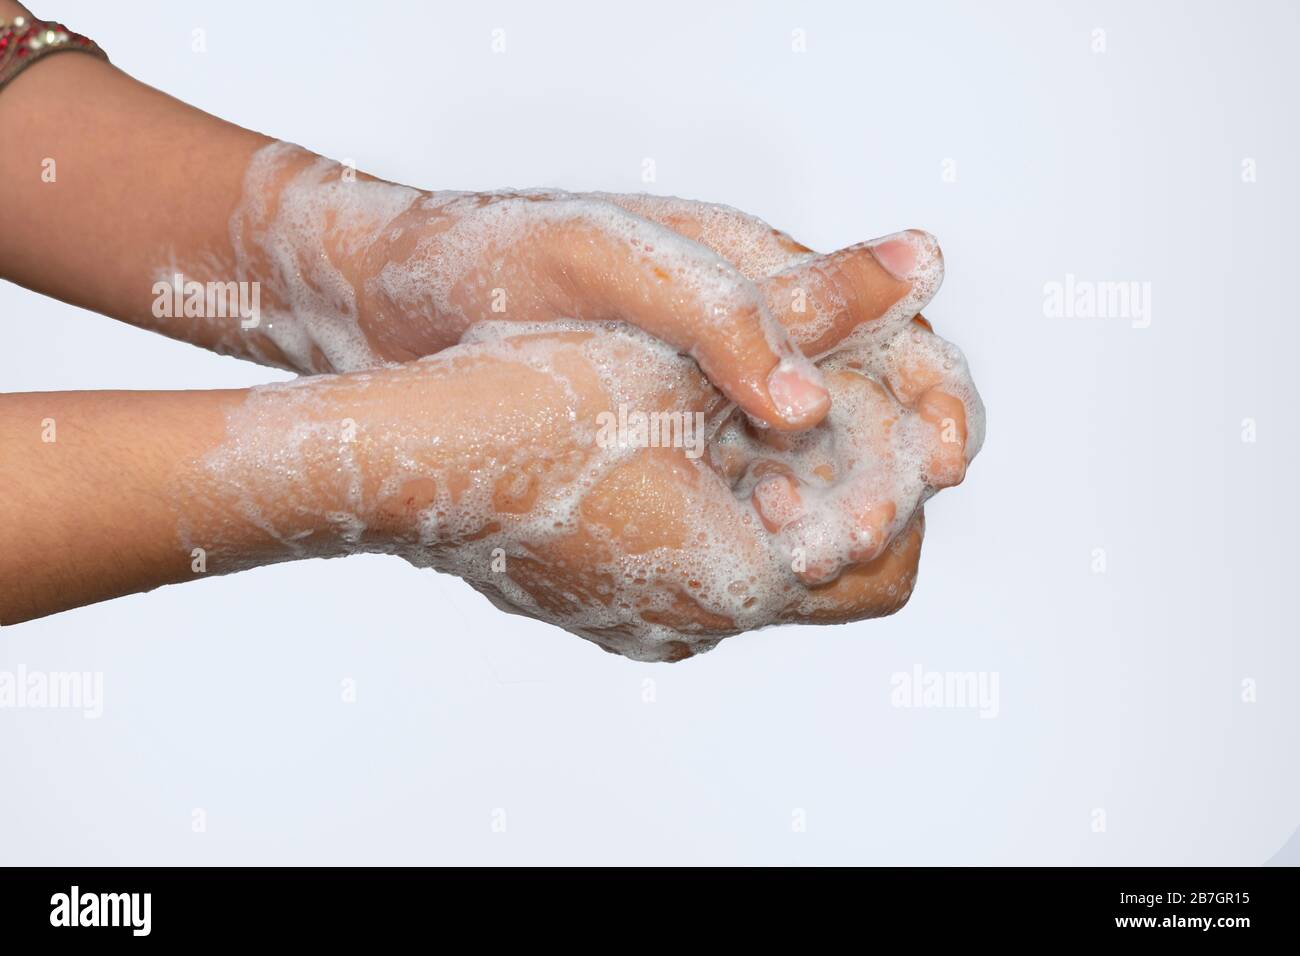 Une fille asiatique se laver les mains avec du savon isolé avec fond blanc. Concept d'hygiène.pour éviter le virus corona (covid-19). Mise au point sélective. Banque D'Images